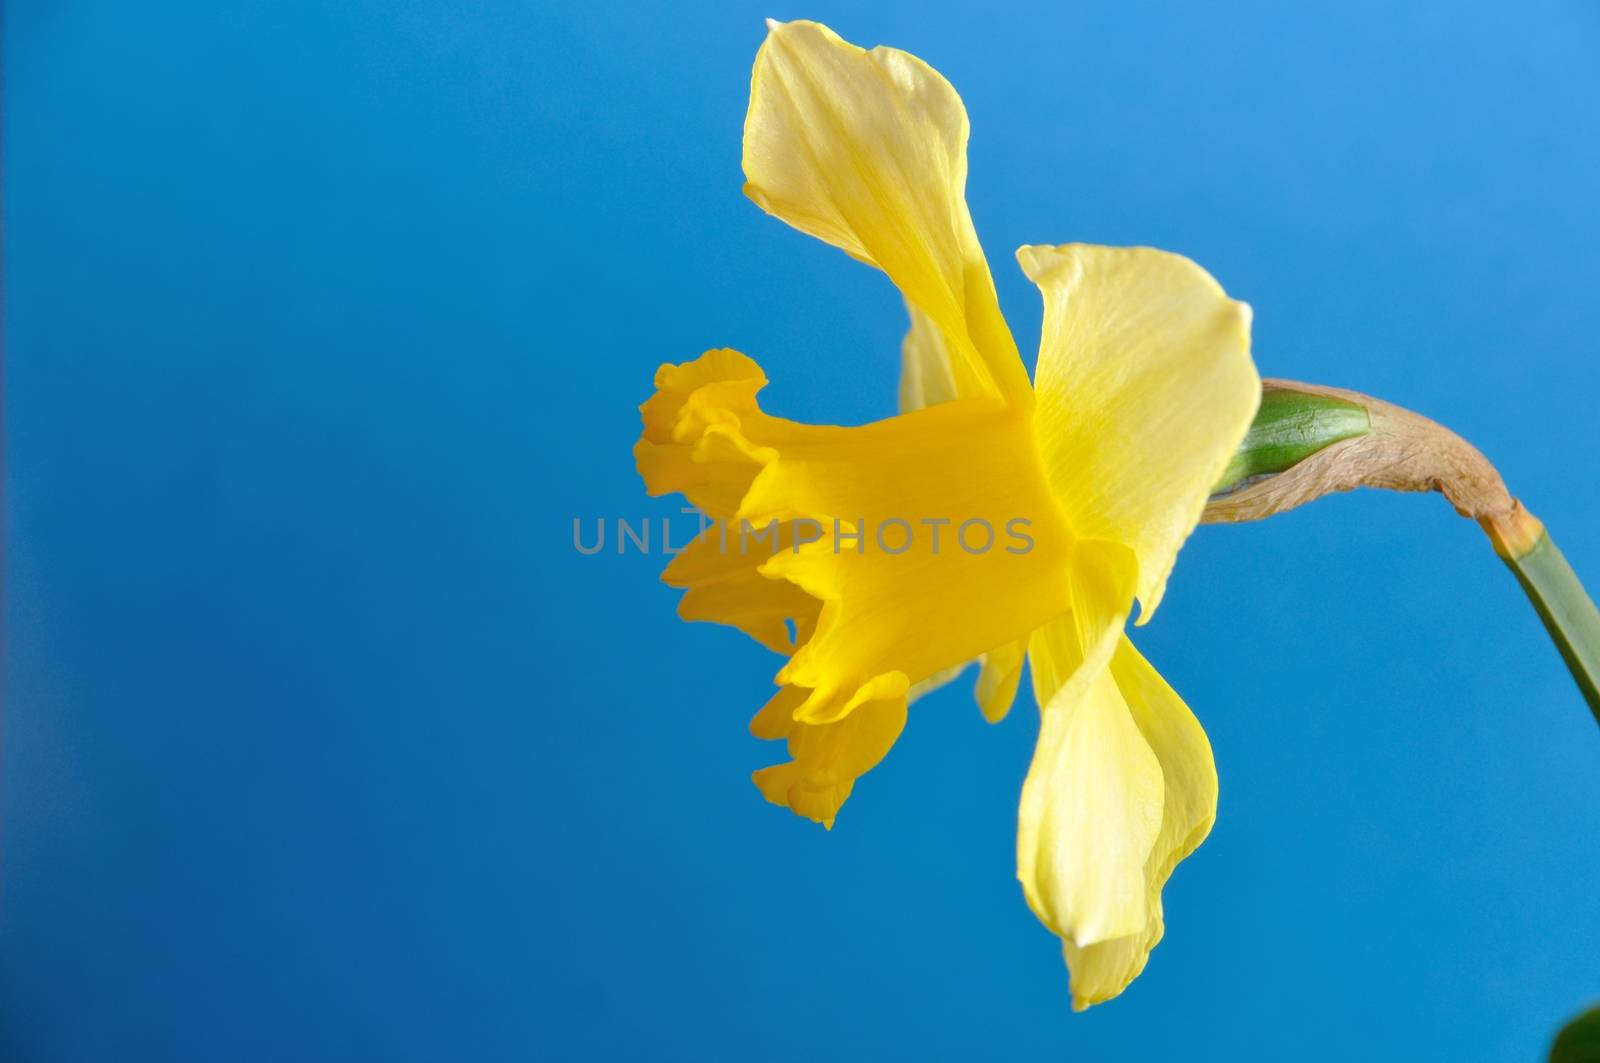 daffodil by BZH22